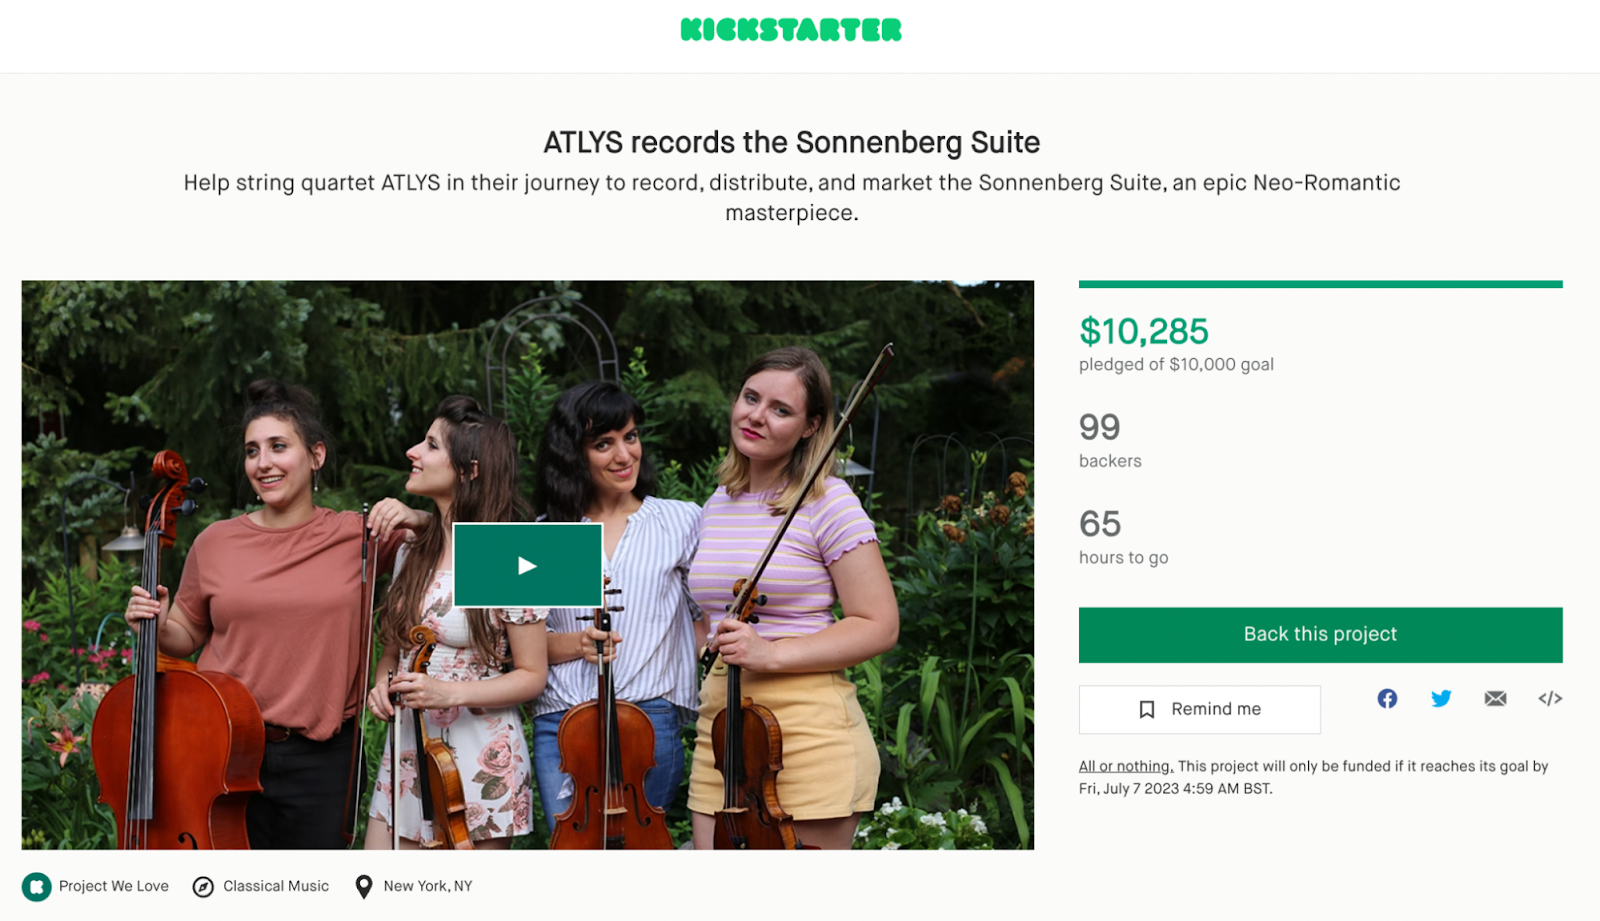 ATLYS makes money as musicians through a kickstarter campaign, seen here earning more than $10,000.